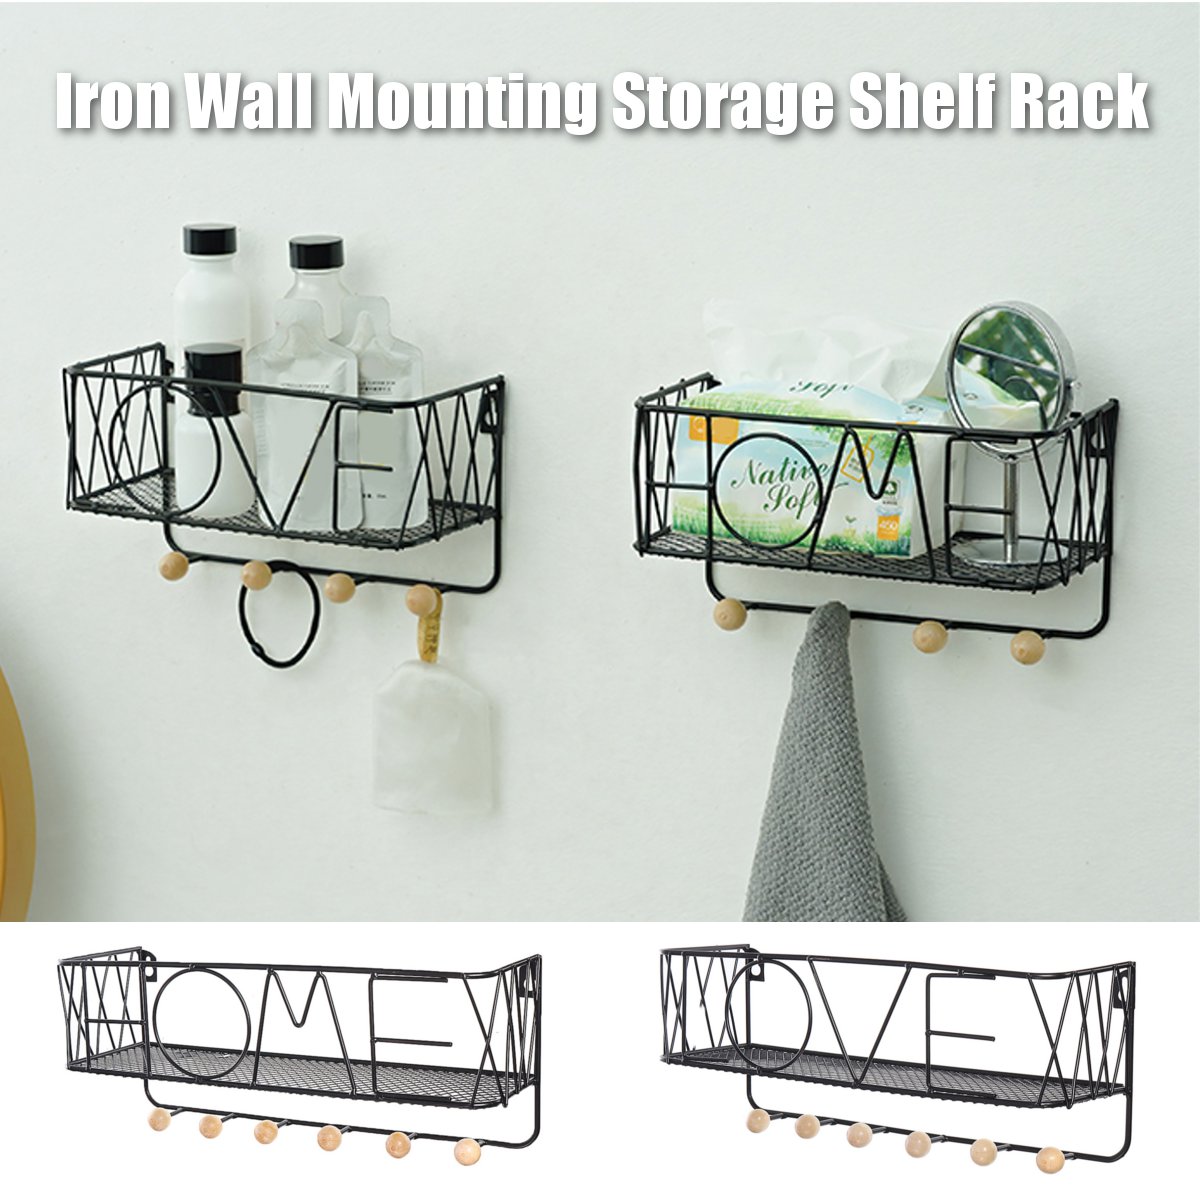 Iron-Wall-Mounting-Shelf-Hook-Storage-Rack-Hanging-Ledge-Holder-Home-Decoration-1684627-1